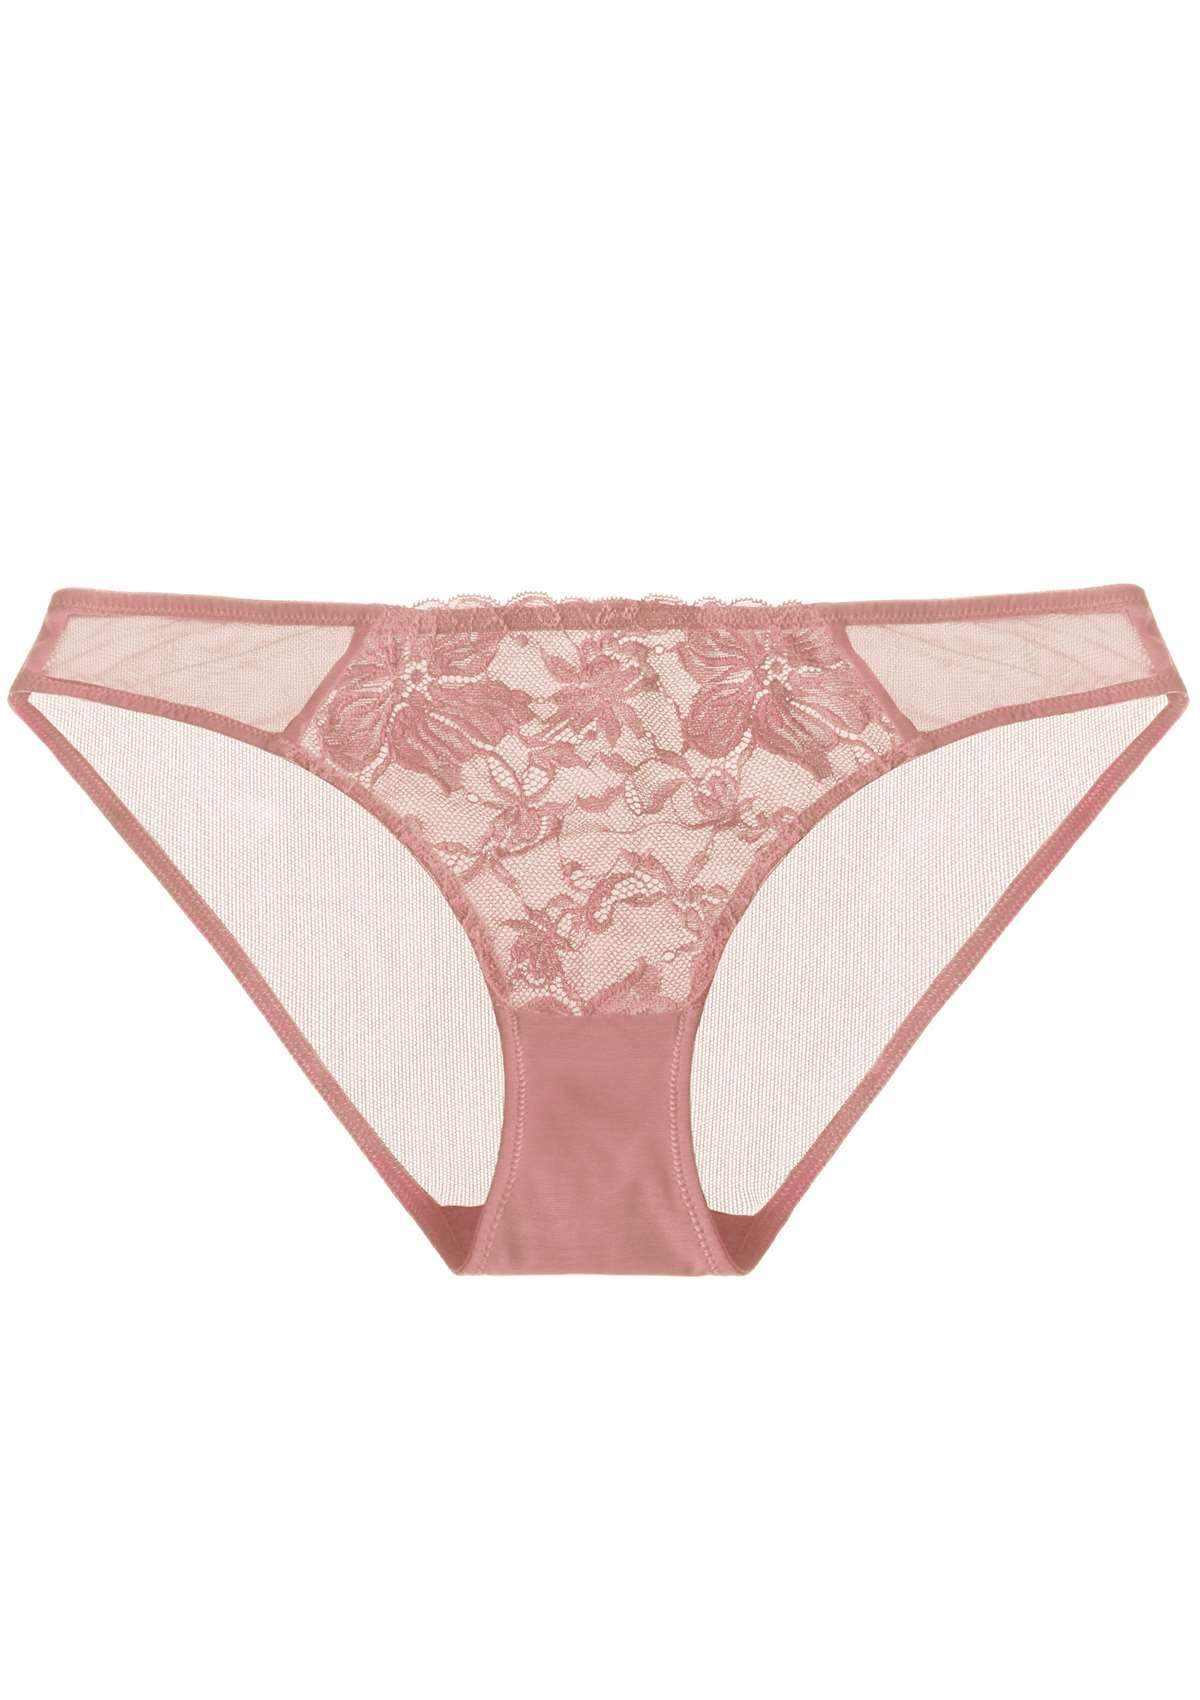 HSIA Breathable Sexy Feminine Lace Mesh Bikini Underwear - M / Light Coral